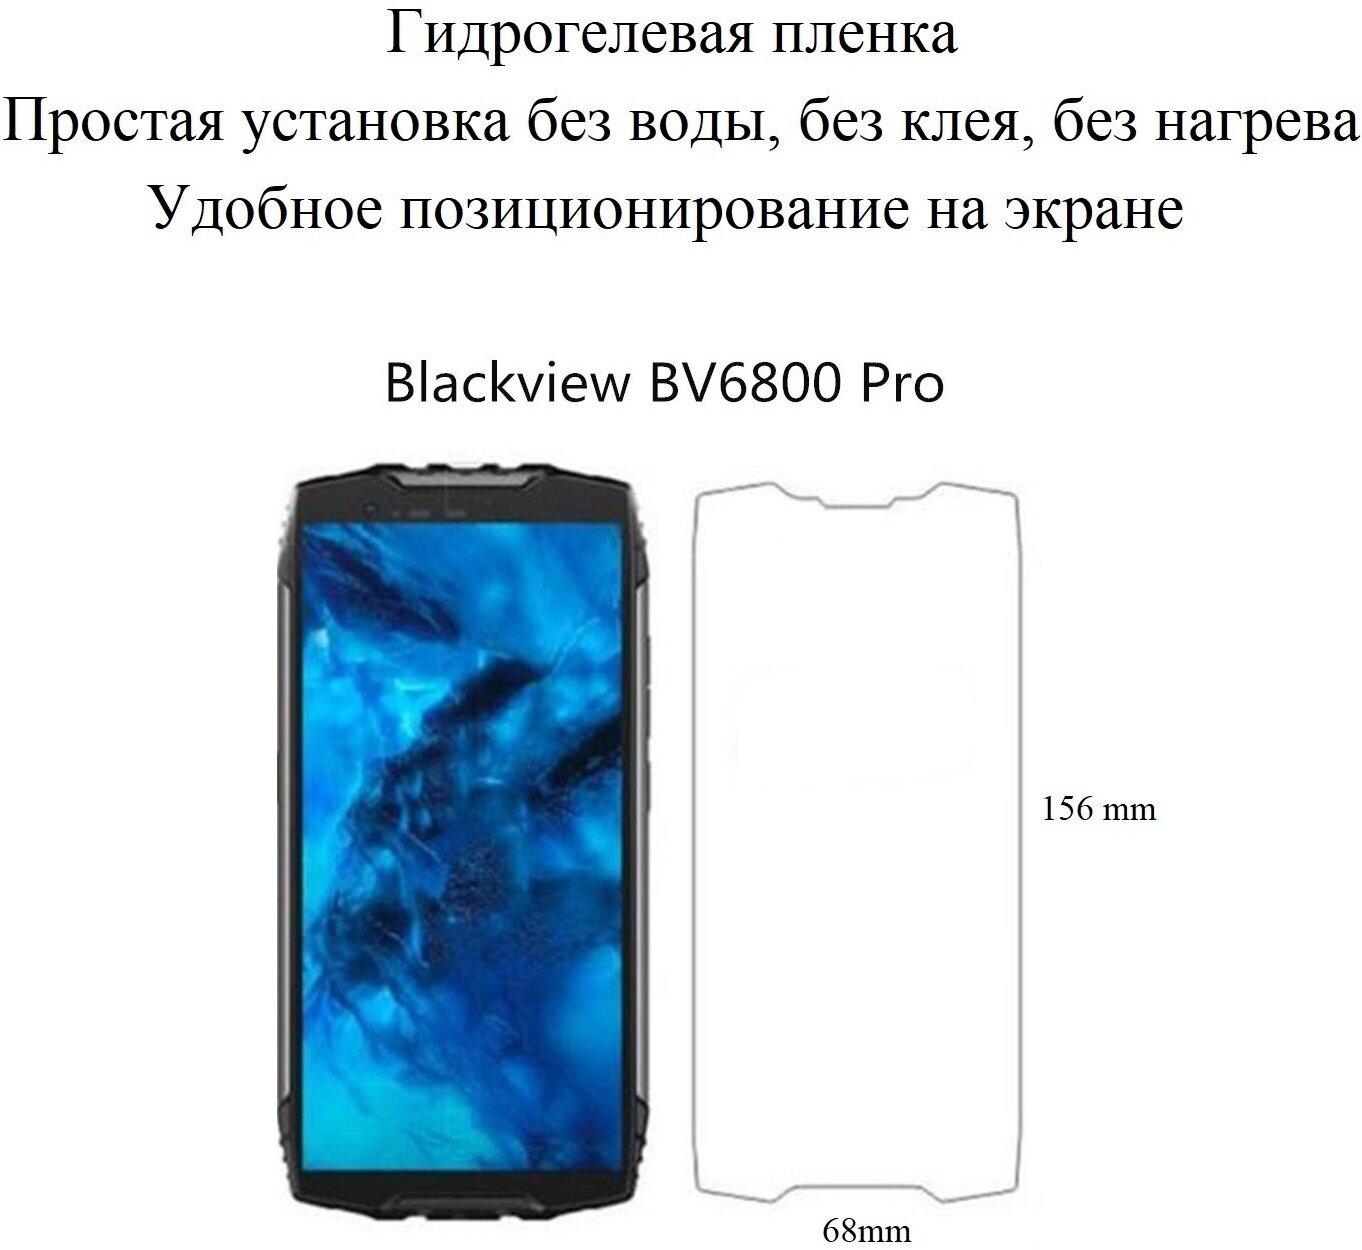 Глянцевая гидрогелевая пленка hoco. на экран смартфона Blackview BV6800 Pro